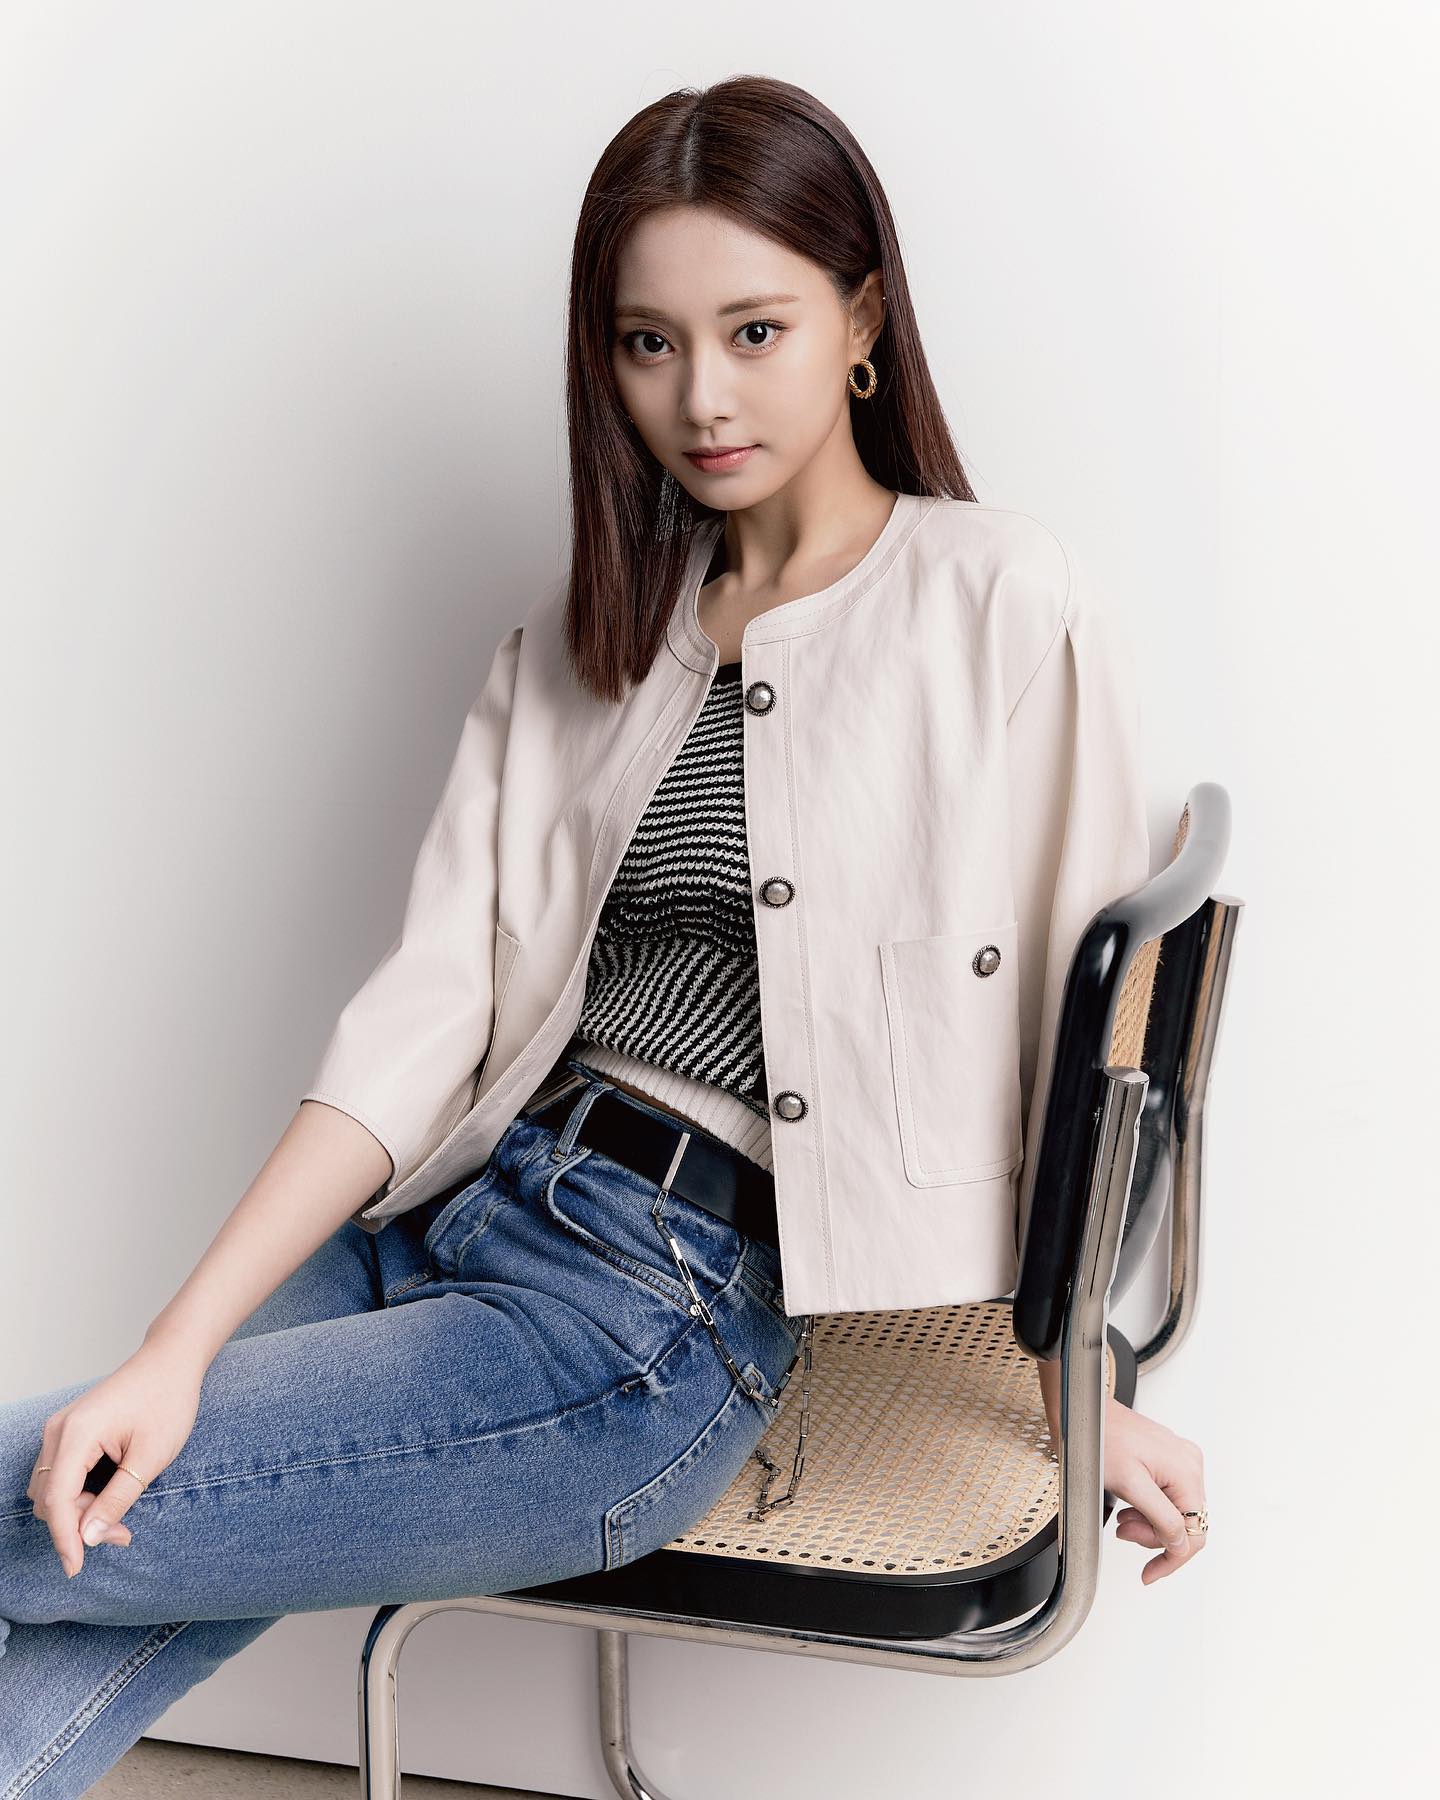 Spring 2022 round-neck eco-leather jacket (zooc x Tzuyu model) 1.jpg